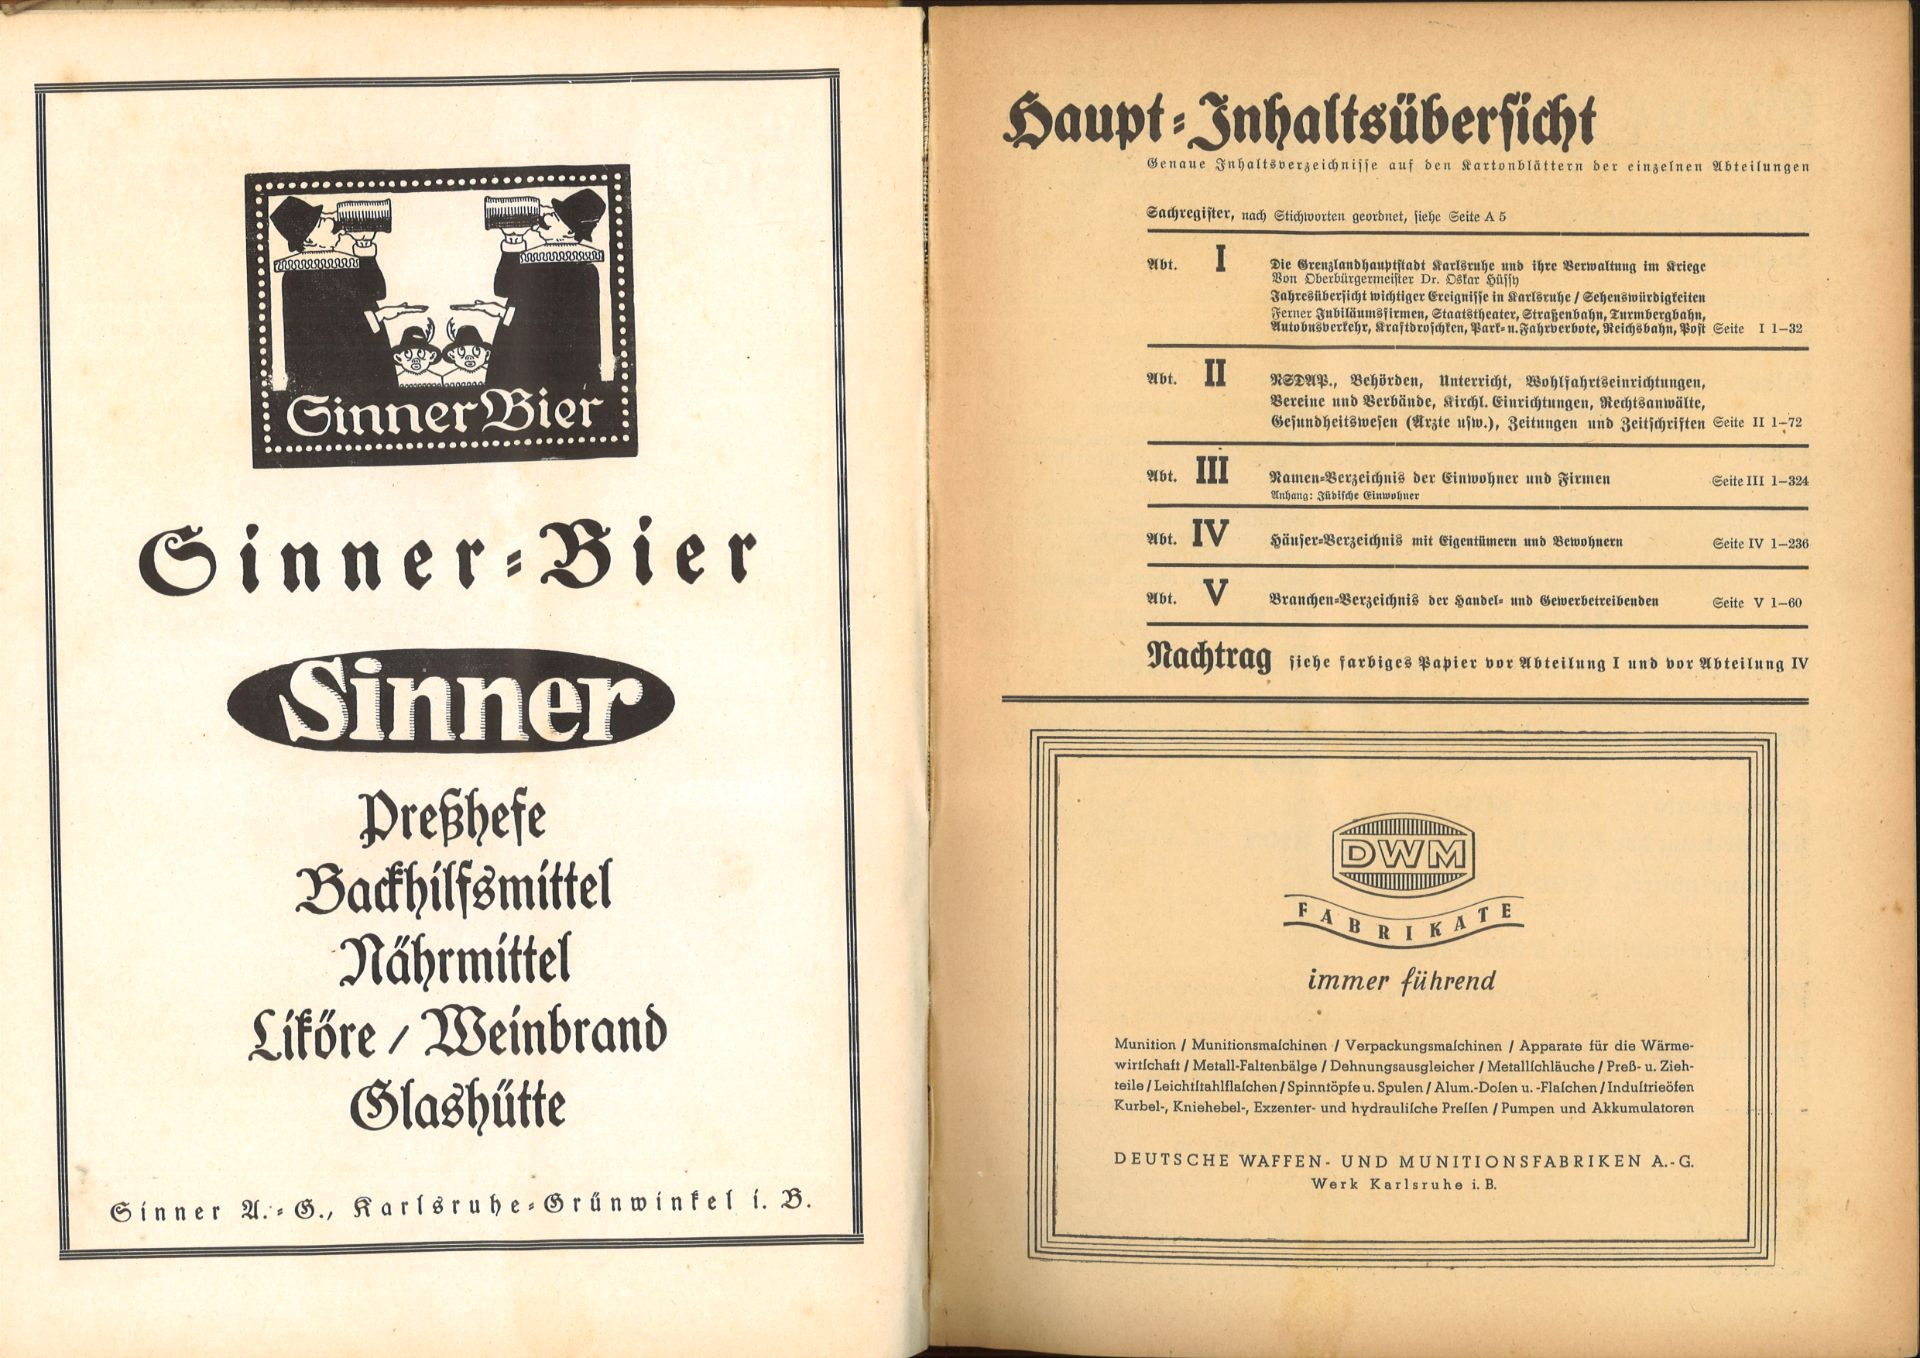 Adressbuch der Stadt Karlsruhe von 1940, siebenundsechzigster Jahrgang, Adressbuchverlag G. Braun, - Image 2 of 2